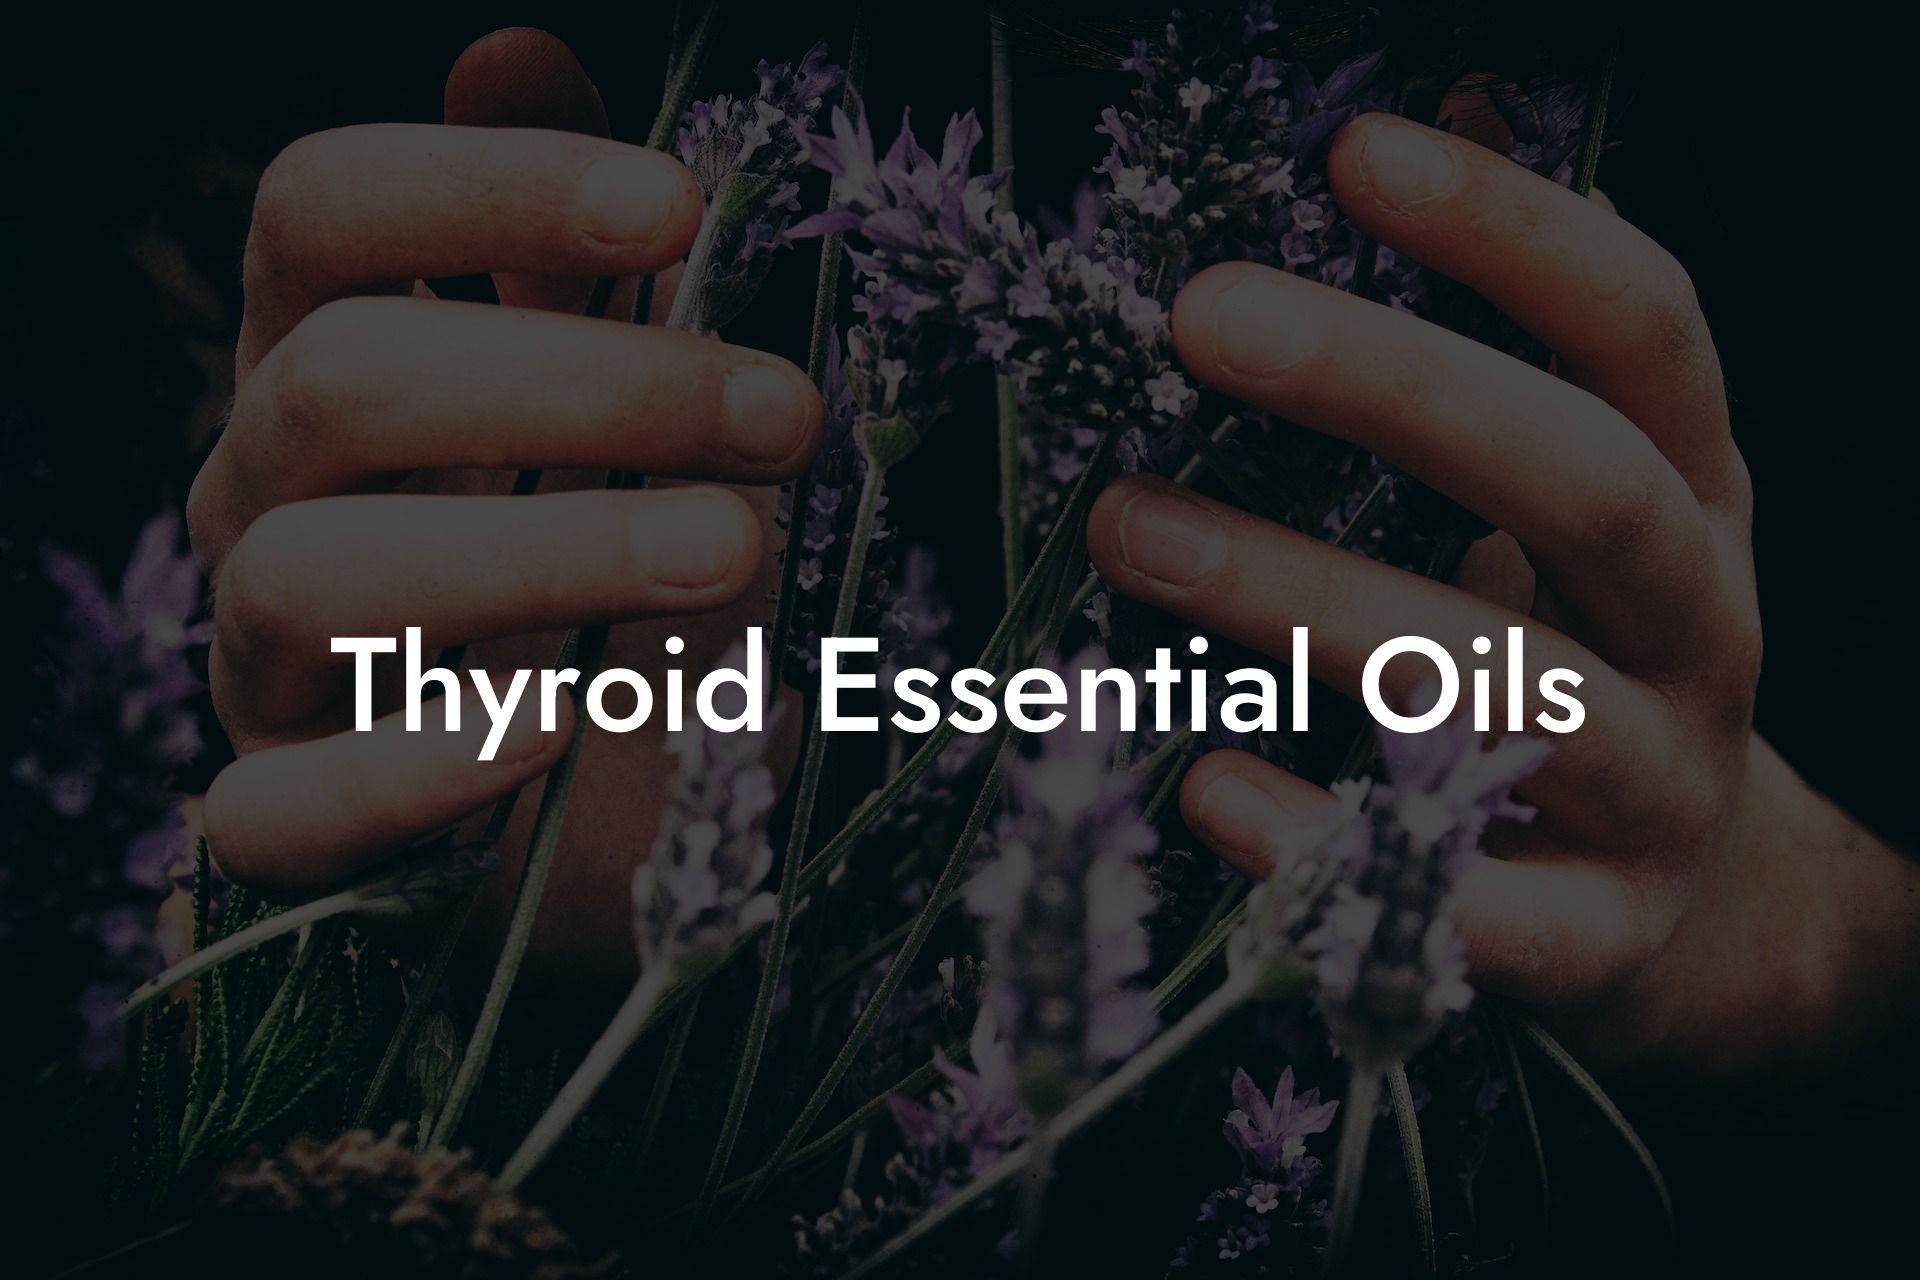 Thyroid Essential Oils